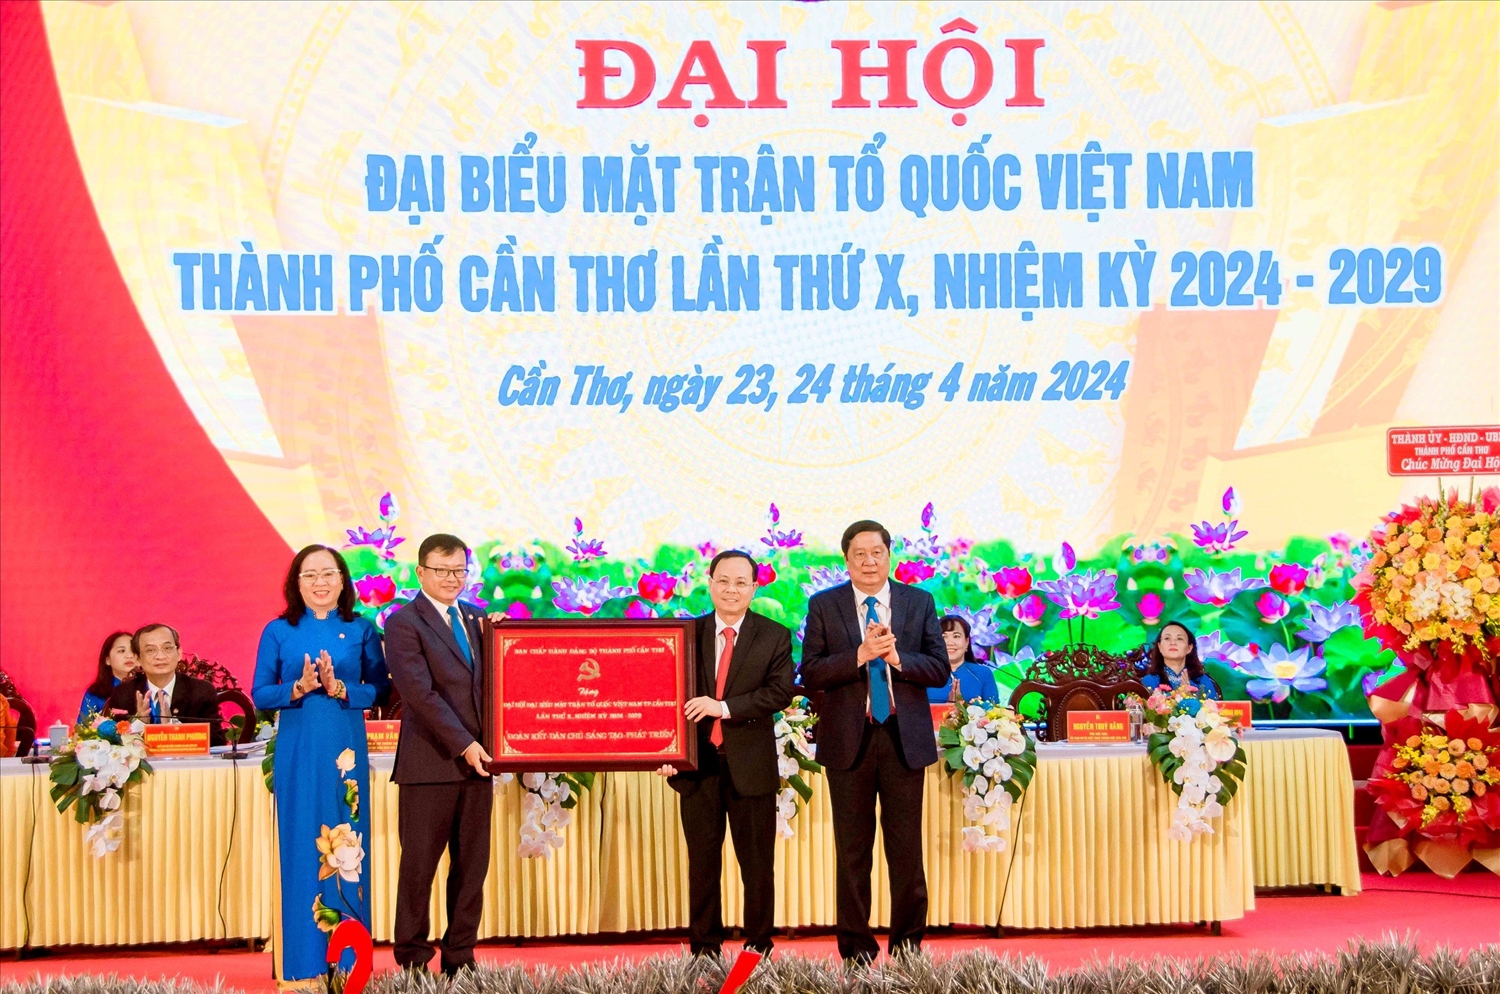 Ông Nguyễn Văn Hiếu, Ủy viên dự khuyết BCH Trung ương Đảng, Bí thư Thành ủy Cần Thơ tặng khánh vàng của Ban Chấp hành Đảng bộ thành phố cho Đại hội